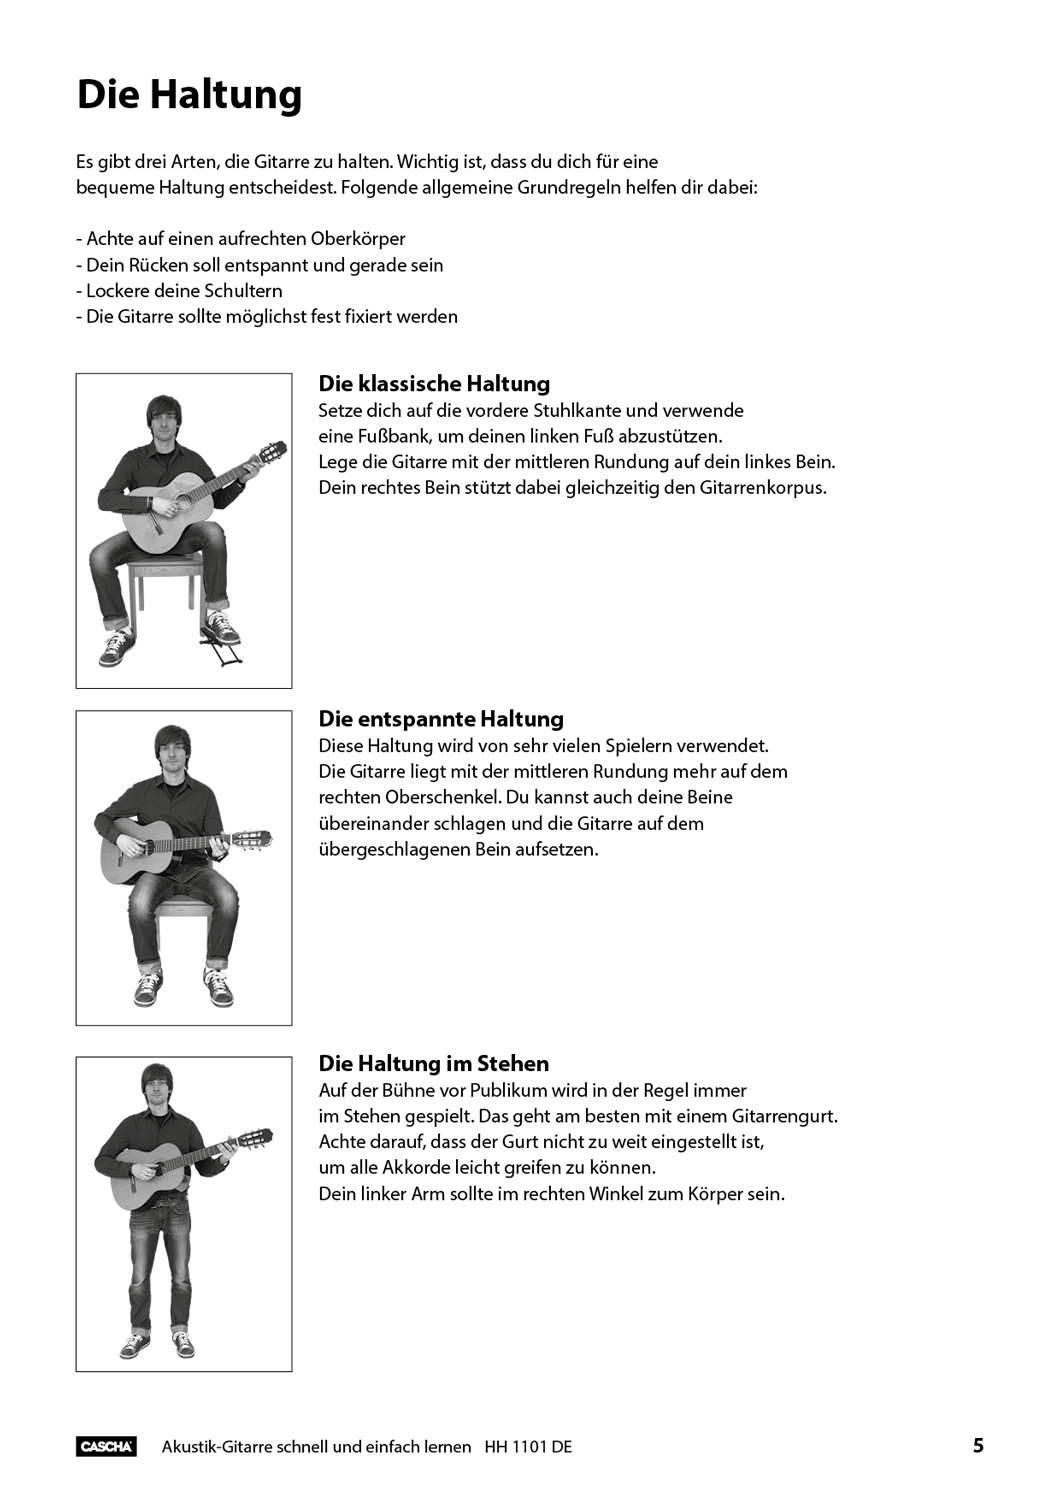 Akustik-Gitarre - Schnell und einfach lernen Seiten 4